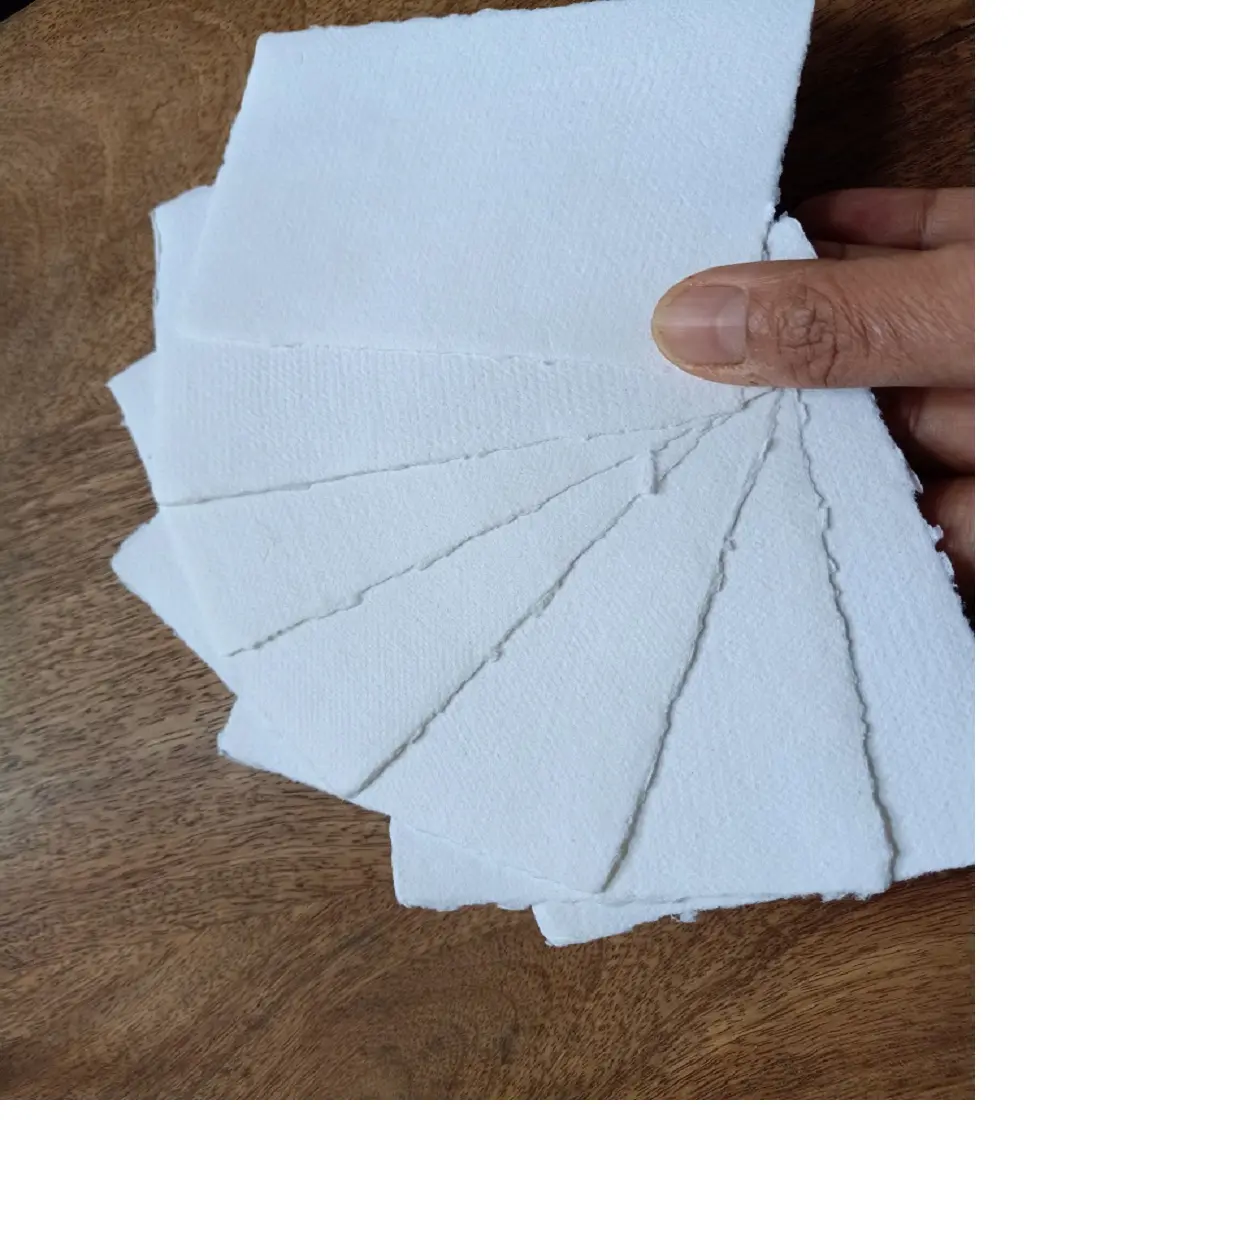 Deckle papel feito à mão de algodão branco, em tamanho de cartão de visita, adequado para fazer cartões de visita ou papelaria de casamento